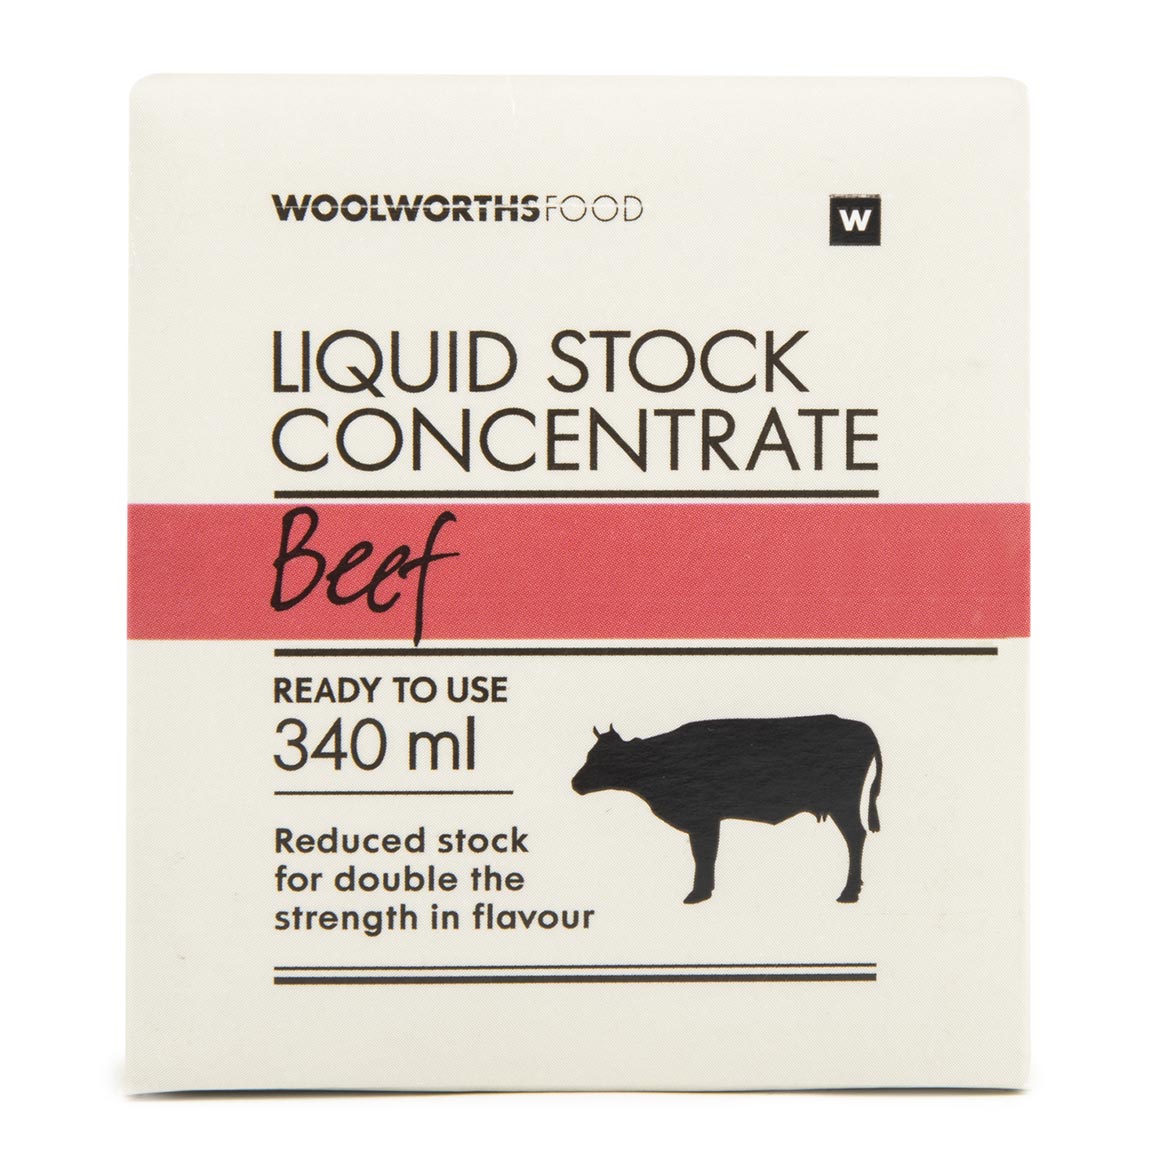 Beef Liquid Concentrate Stock 340 Ml 6009189000416 ?V=1esC&o=eyJidWNrZXQiOiJ3dy1vbmxpbmUtaW1hZ2UtcmVzaXplIiwia2V5IjoiaW1hZ2VzL2VsYXN0aWNlcmEvcHJvZHVjdHMvaGVyby8yMDE1LTA0LTAxLzYwMDkxODkwMDA0MTZfaGVyby5qcGcifQ&